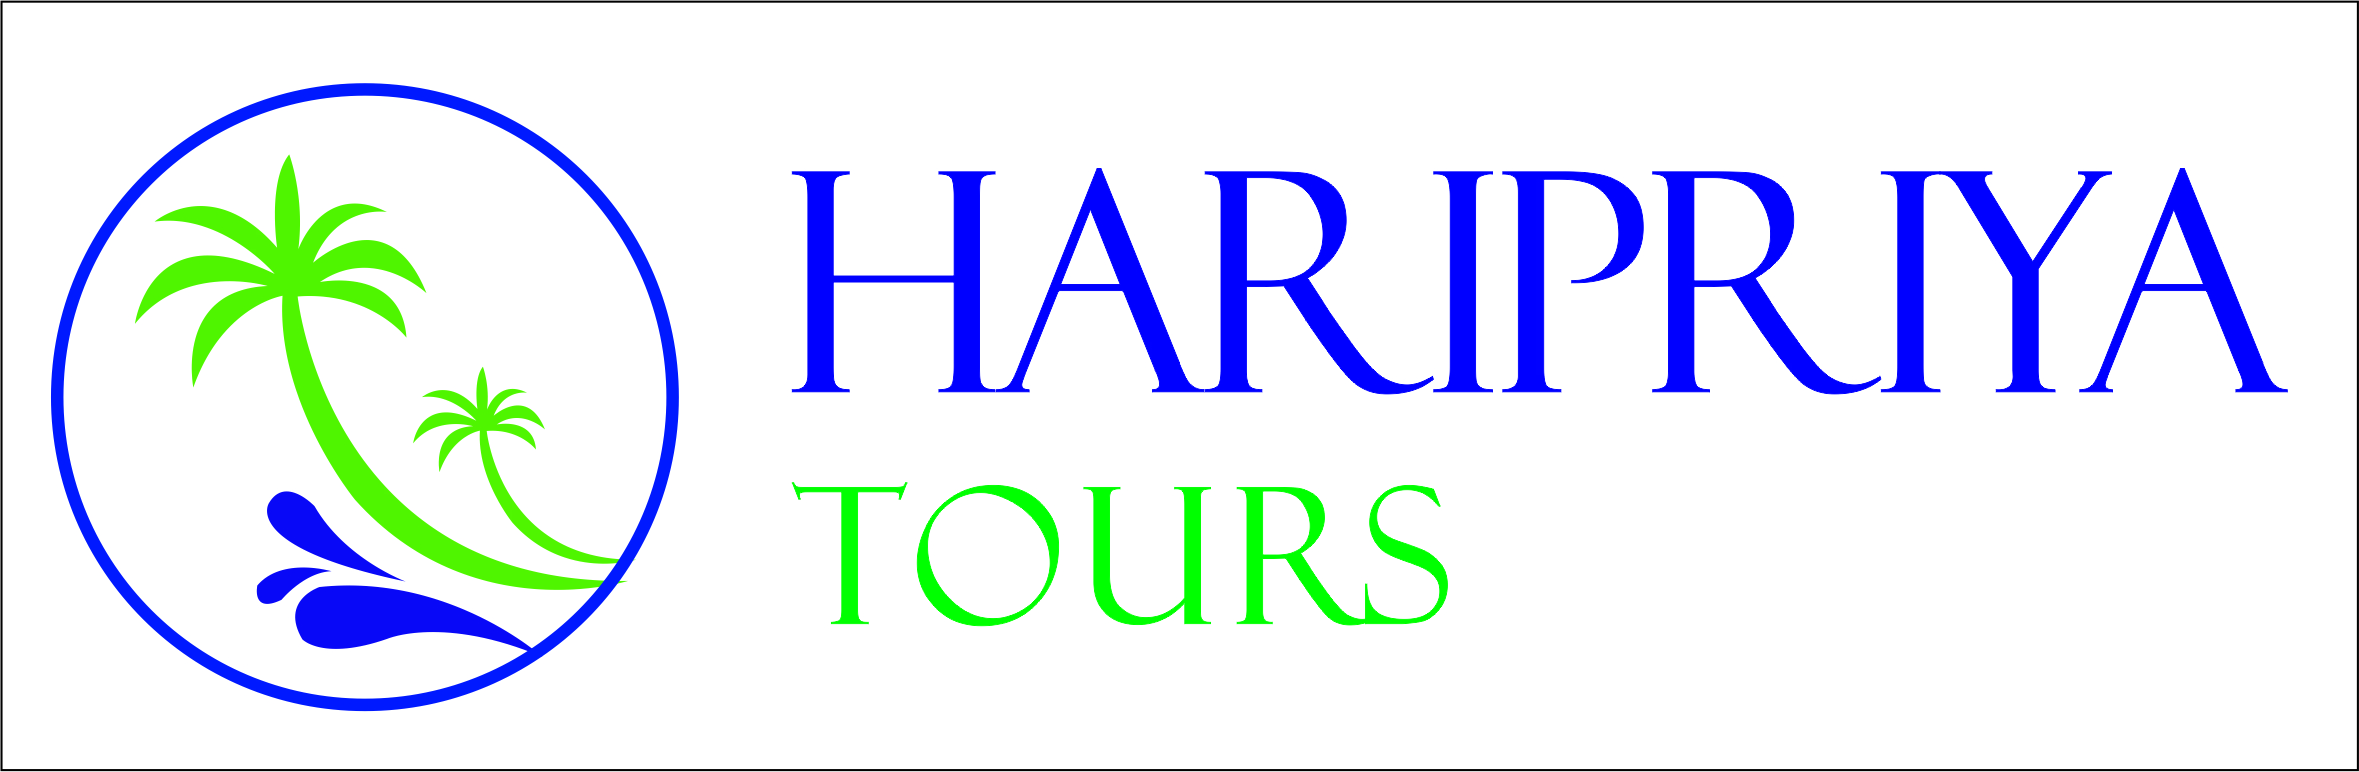 Haripriya Tours